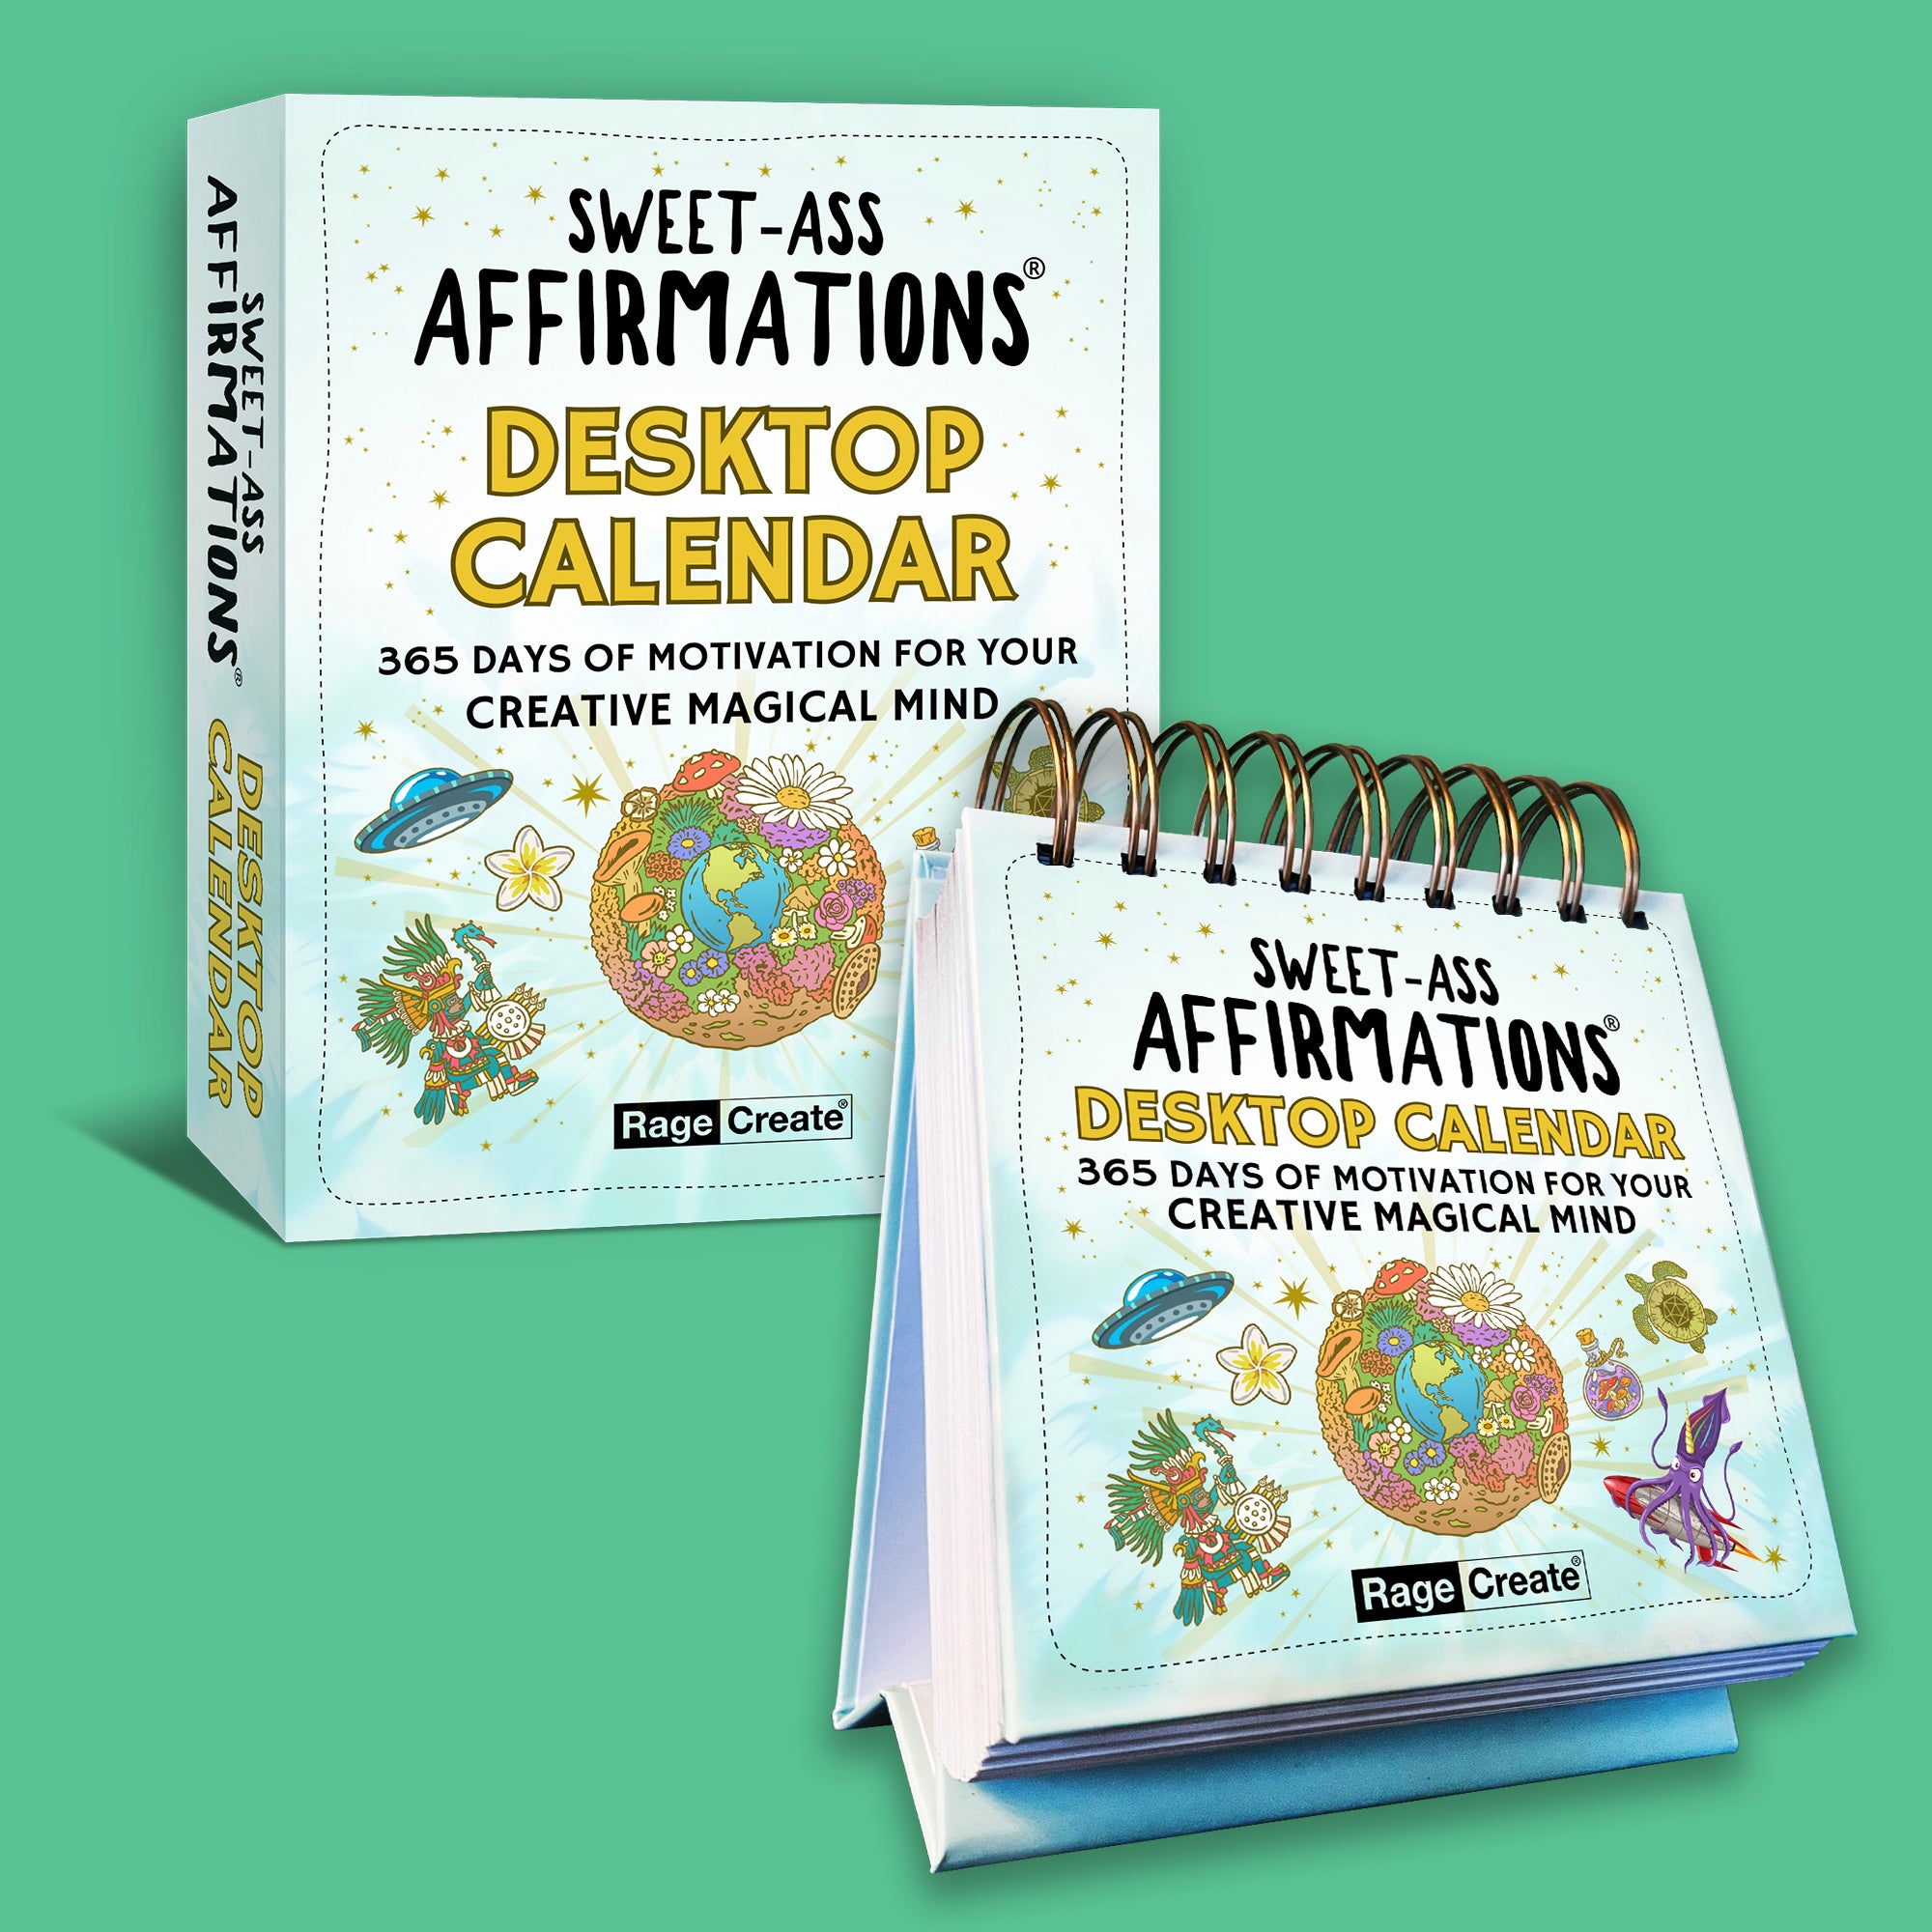 Sweet-Ass Affirmations Desktop Calendar - First Print Run - Only 400 Available